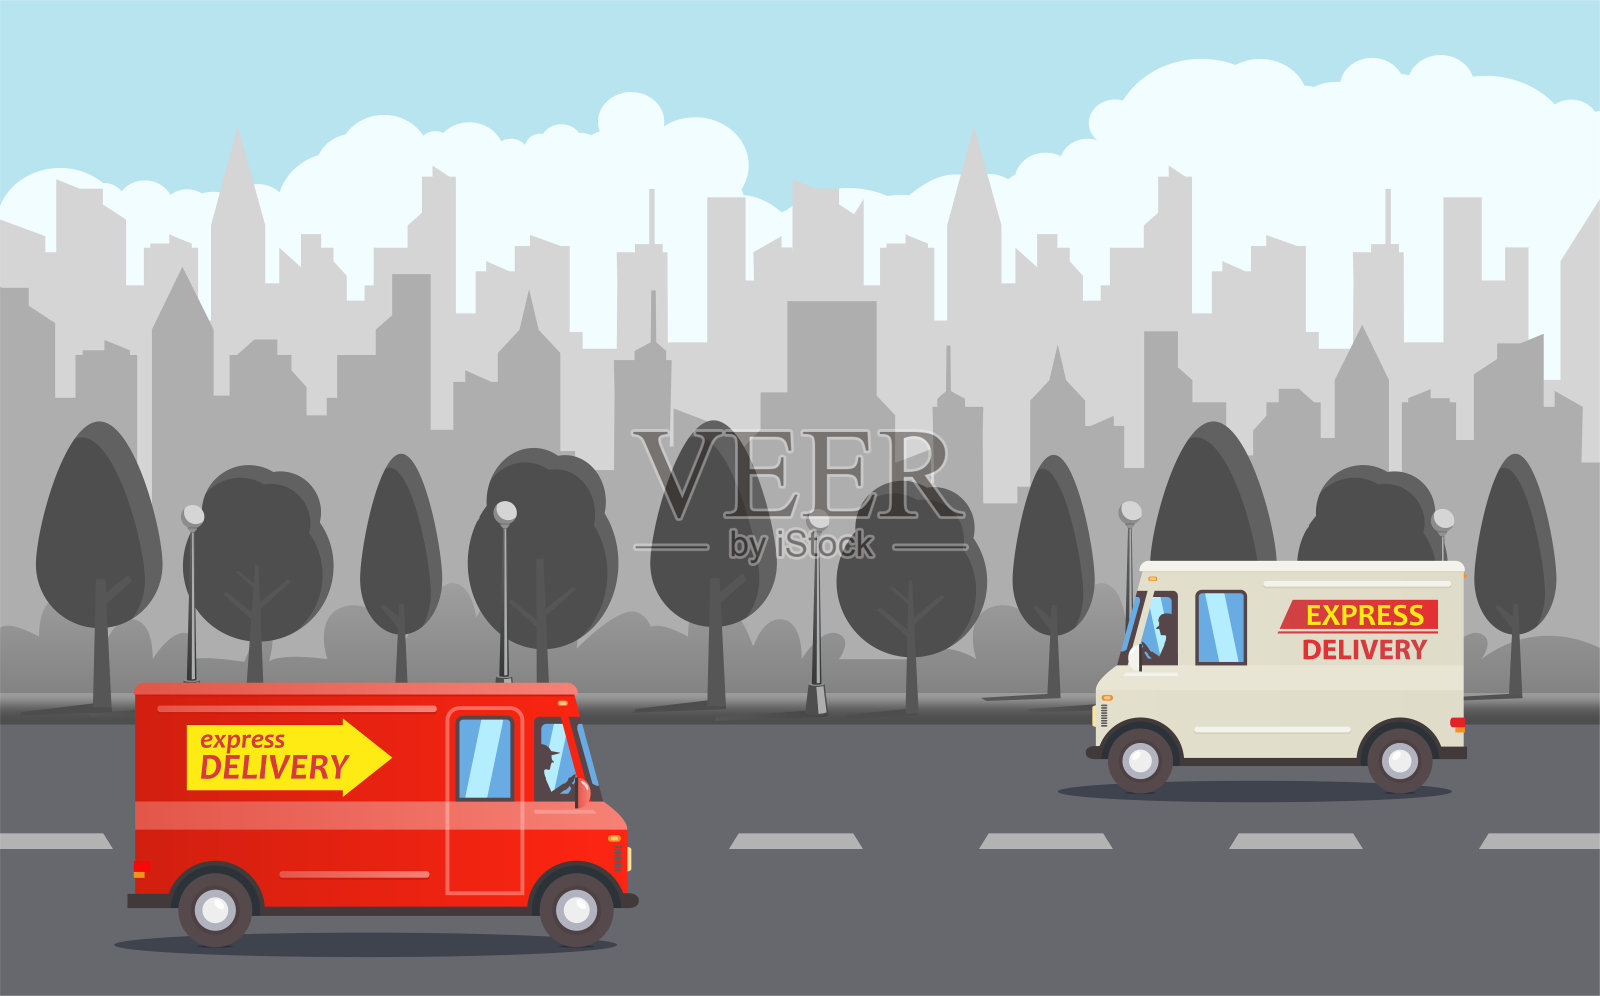 白色和红色的卡通货车，灰色的公园，黑暗的城市天际线为背景。插画图片素材